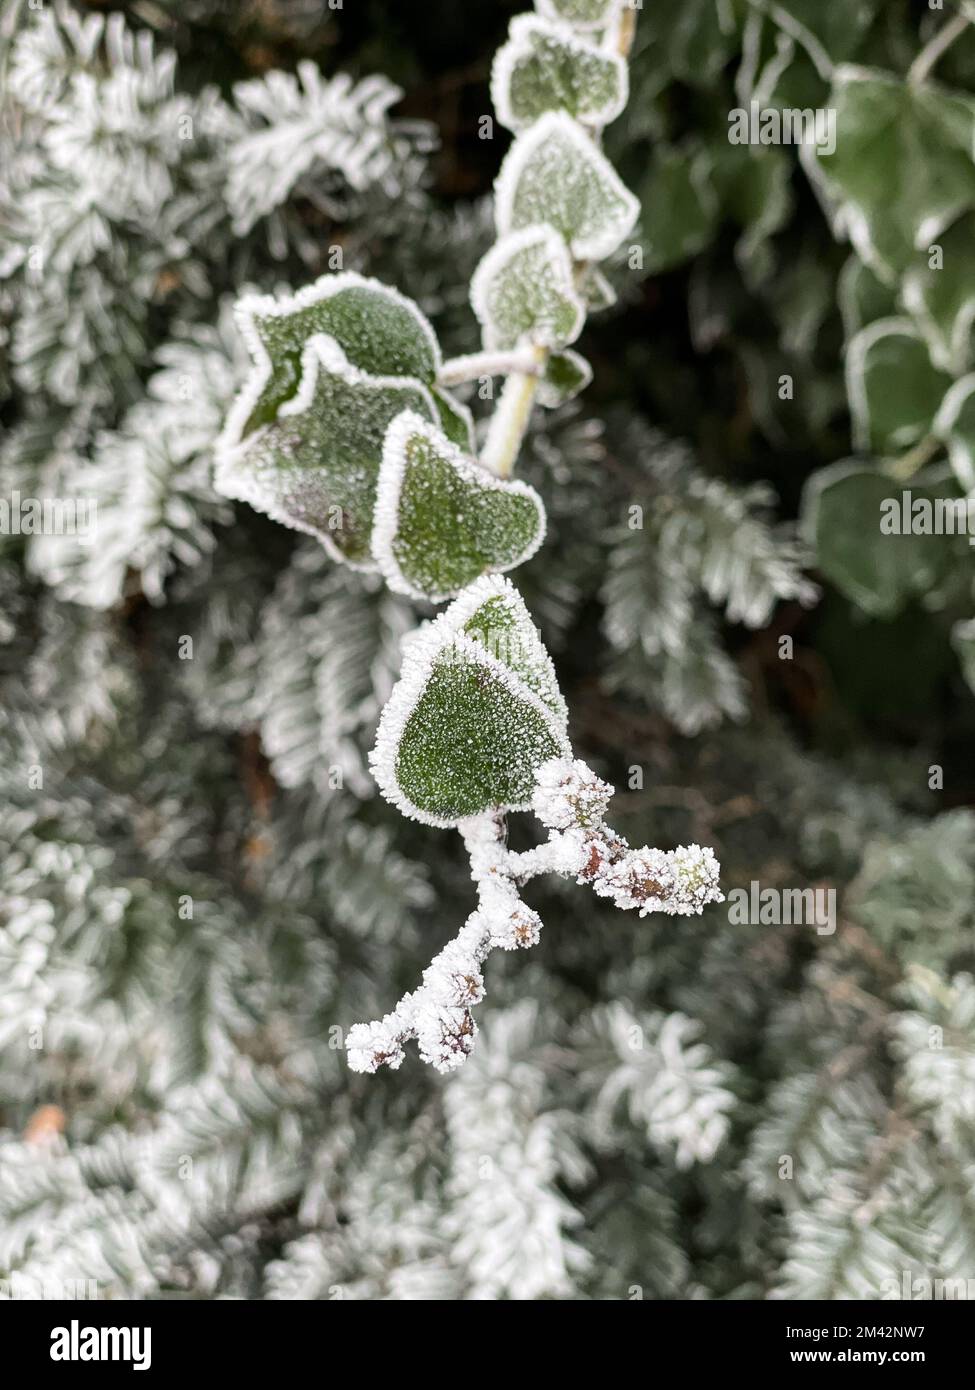 Heifrost bildet einen weißen kristallinen Rahmen um die grünen, herzförmigen Blätter einer Efeu-Rebe. Stockfoto